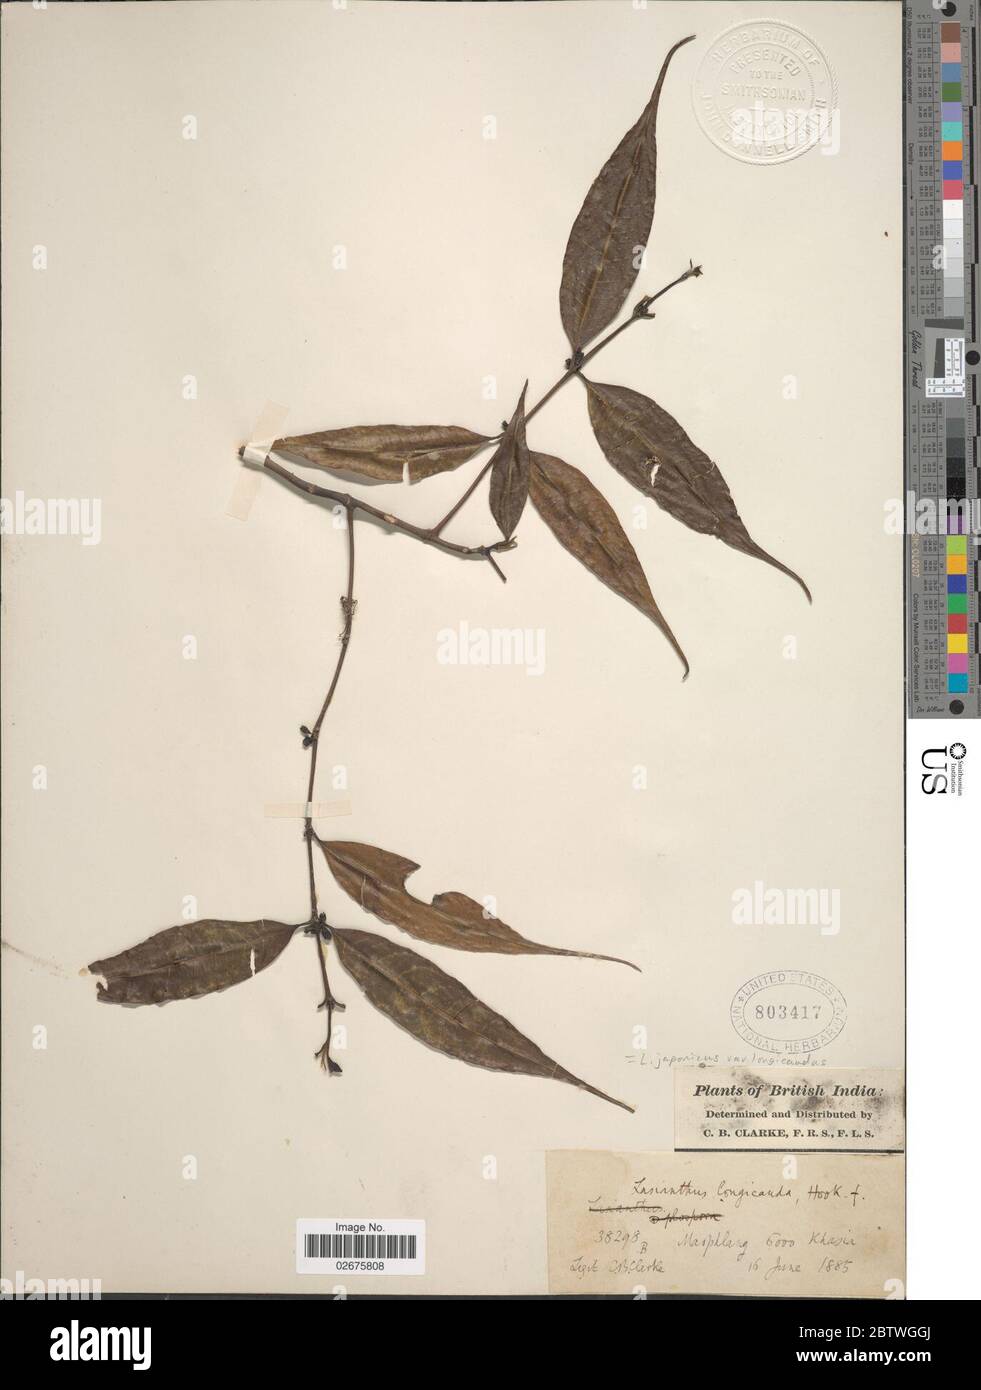 Lasianthus japonicus Miq. Stock Photo